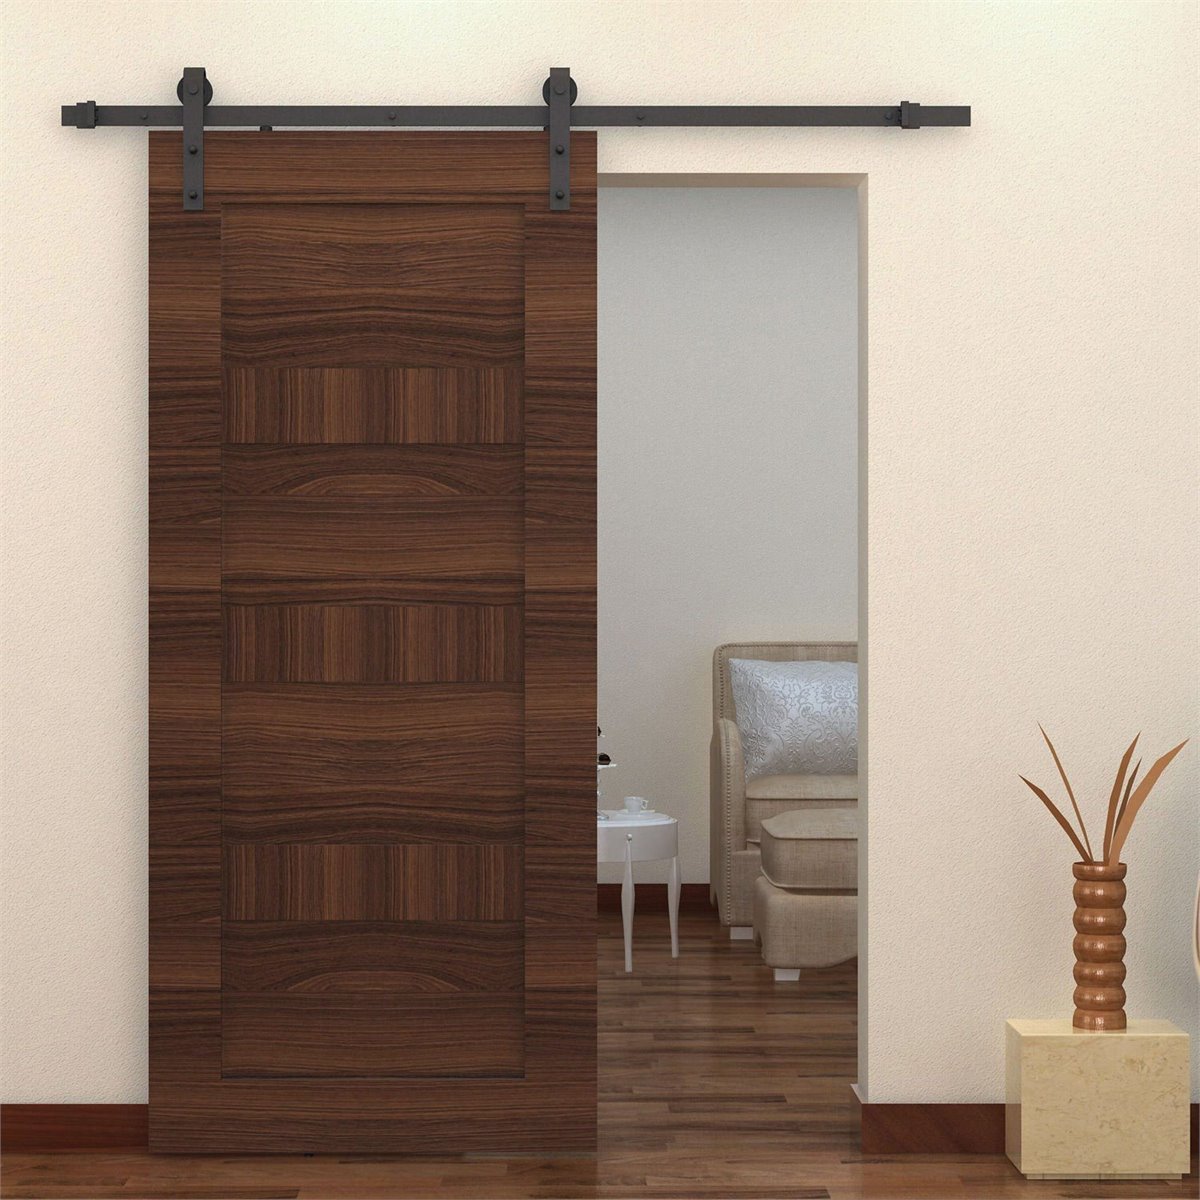 Conjunto completo para puertas correderas en madera - 1650mm